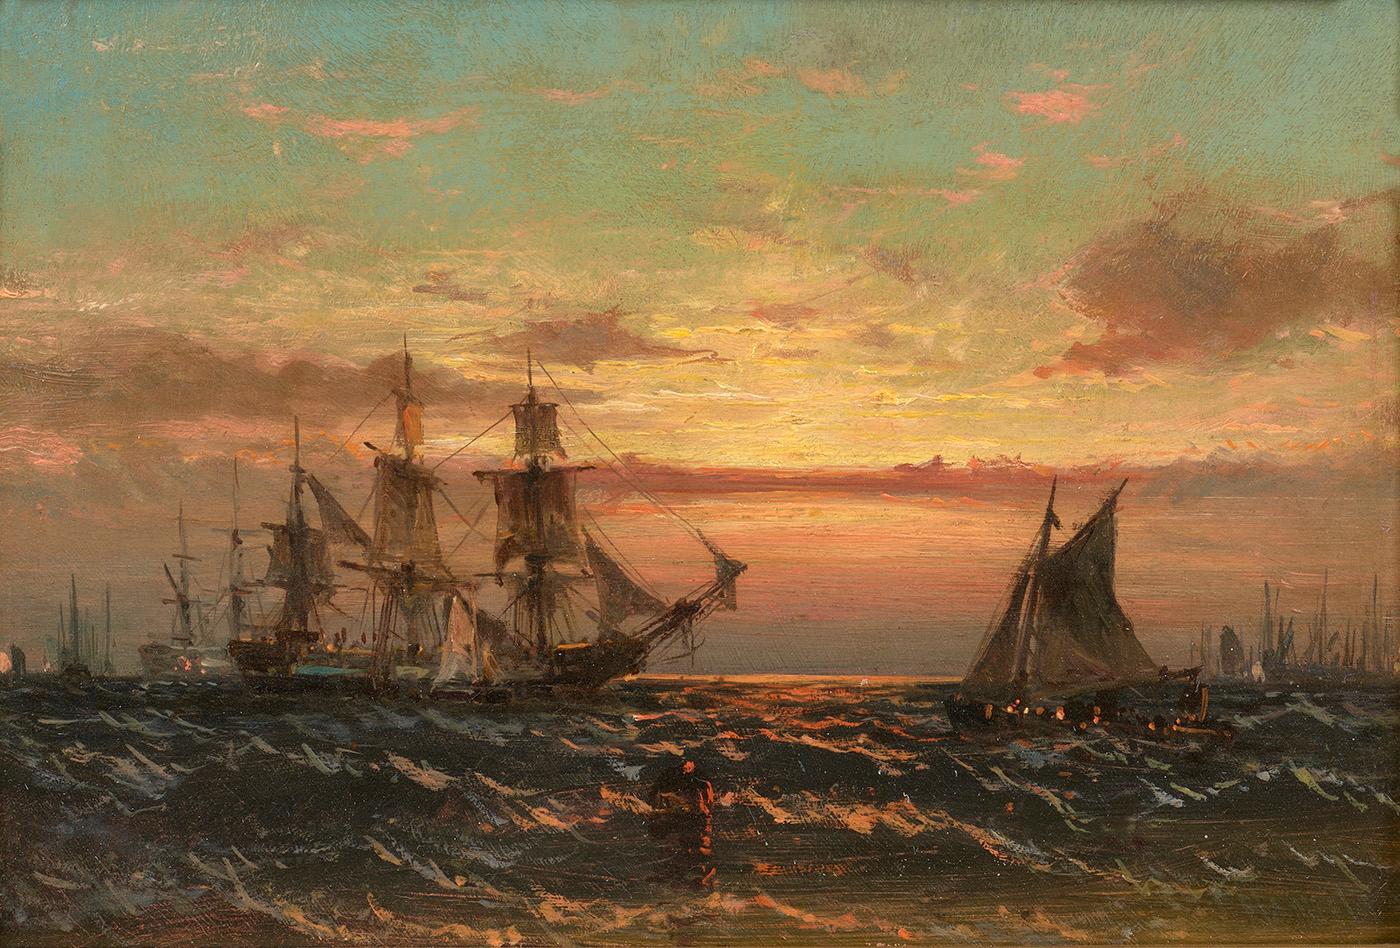 James Hamilton Landscape Painting – Küstensszene am Sonnenuntergang mit Schiffen 